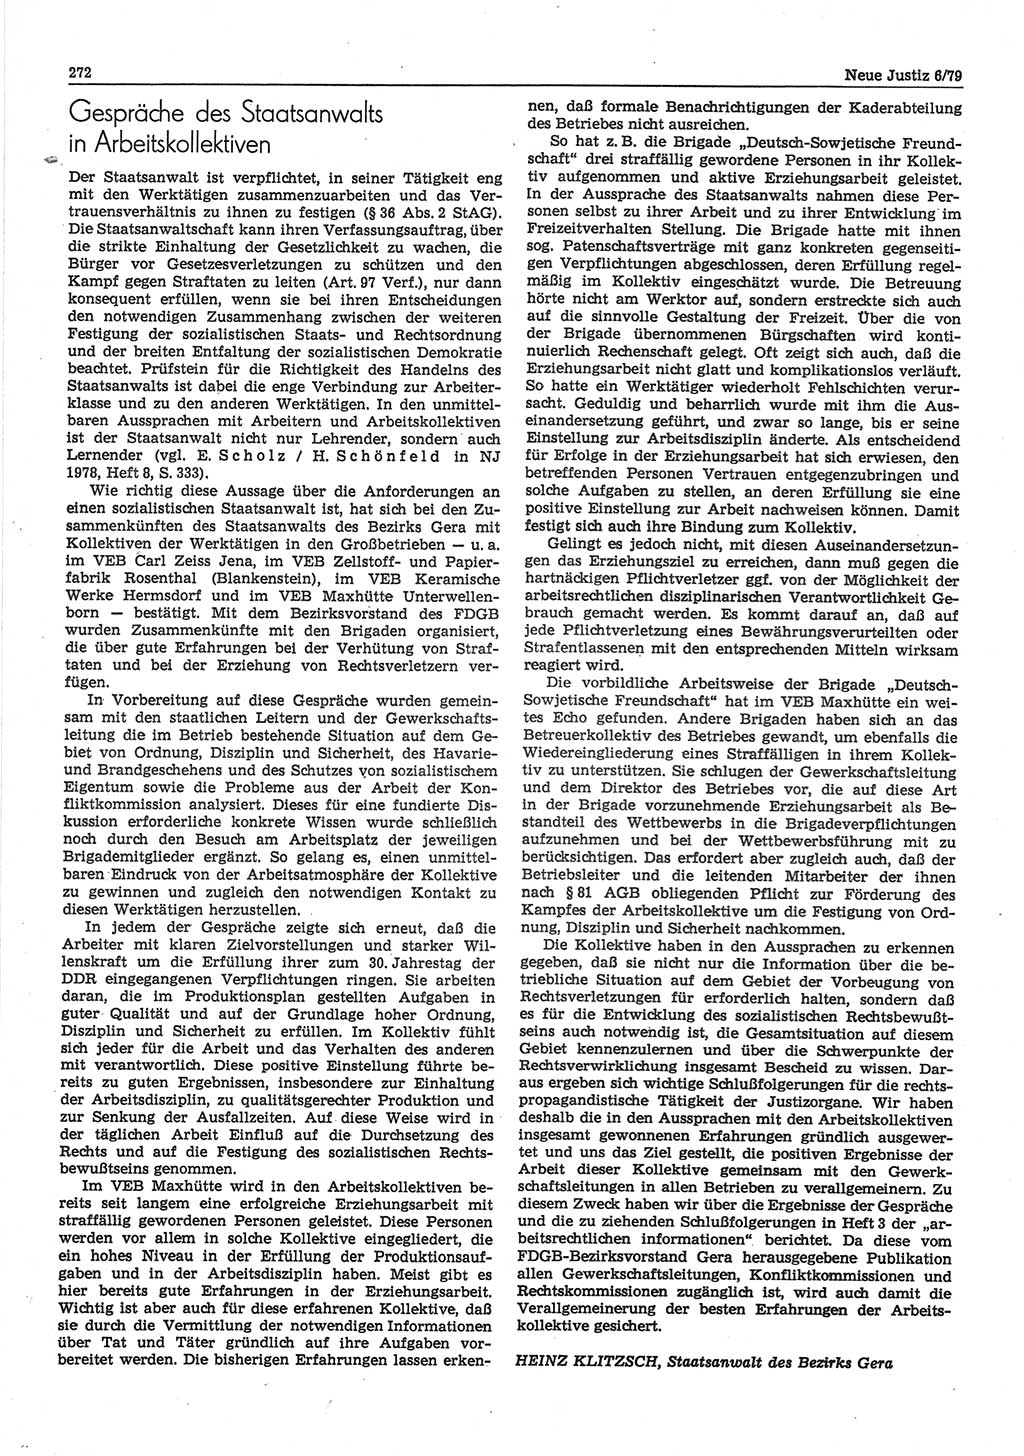 Neue Justiz (NJ), Zeitschrift für sozialistisches Recht und Gesetzlichkeit [Deutsche Demokratische Republik (DDR)], 33. Jahrgang 1979, Seite 272 (NJ DDR 1979, S. 272)